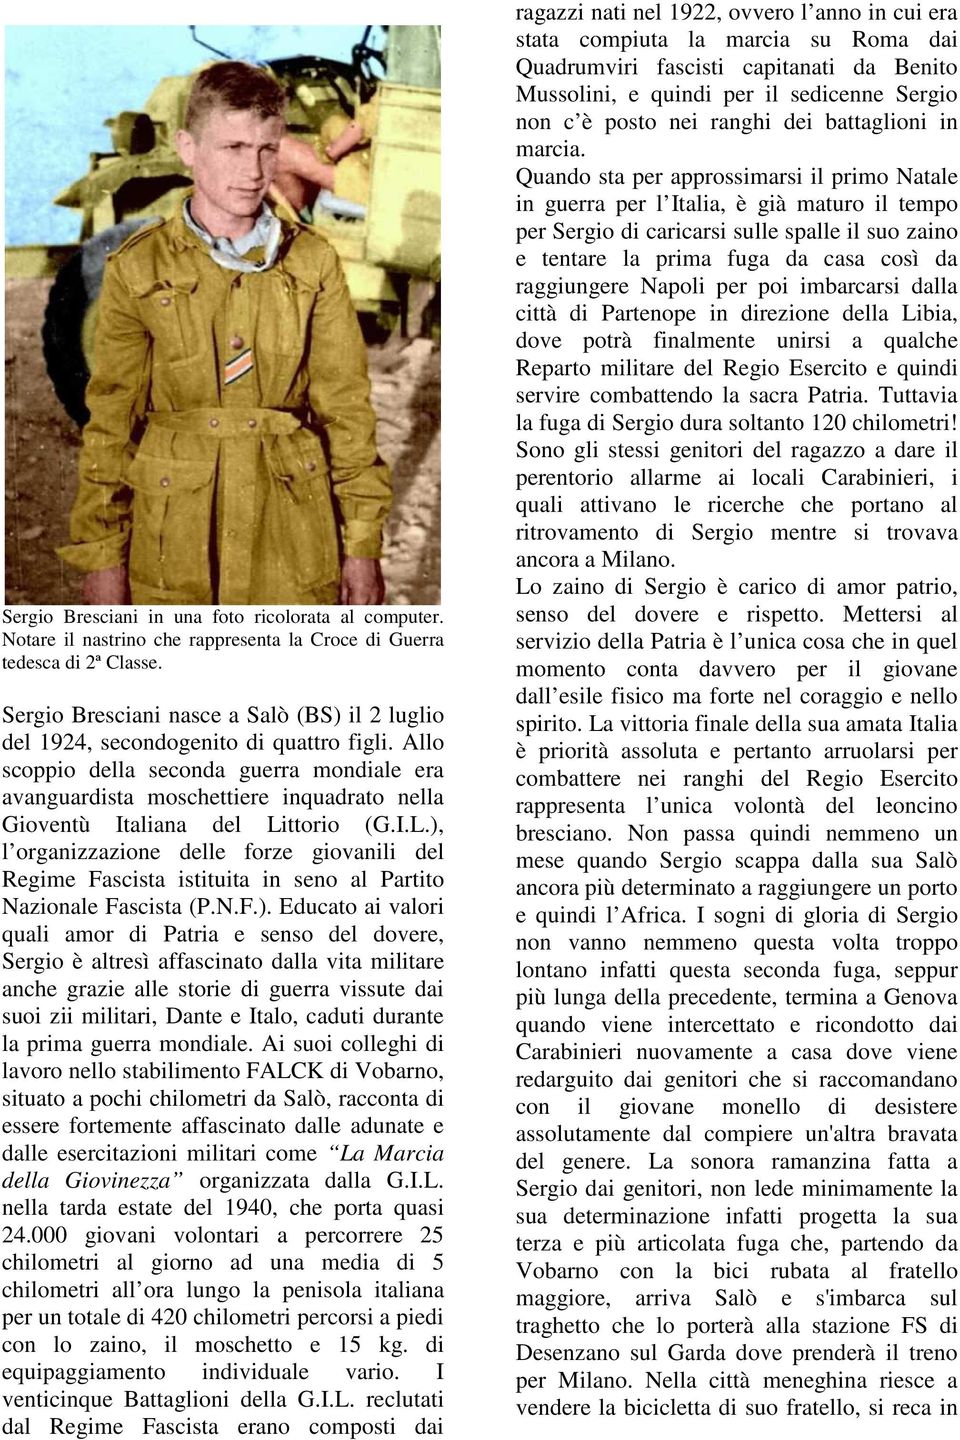 Allo scoppio della seconda guerra mondiale era avanguardista moschettiere inquadrato nella Gioventù Italiana del Li